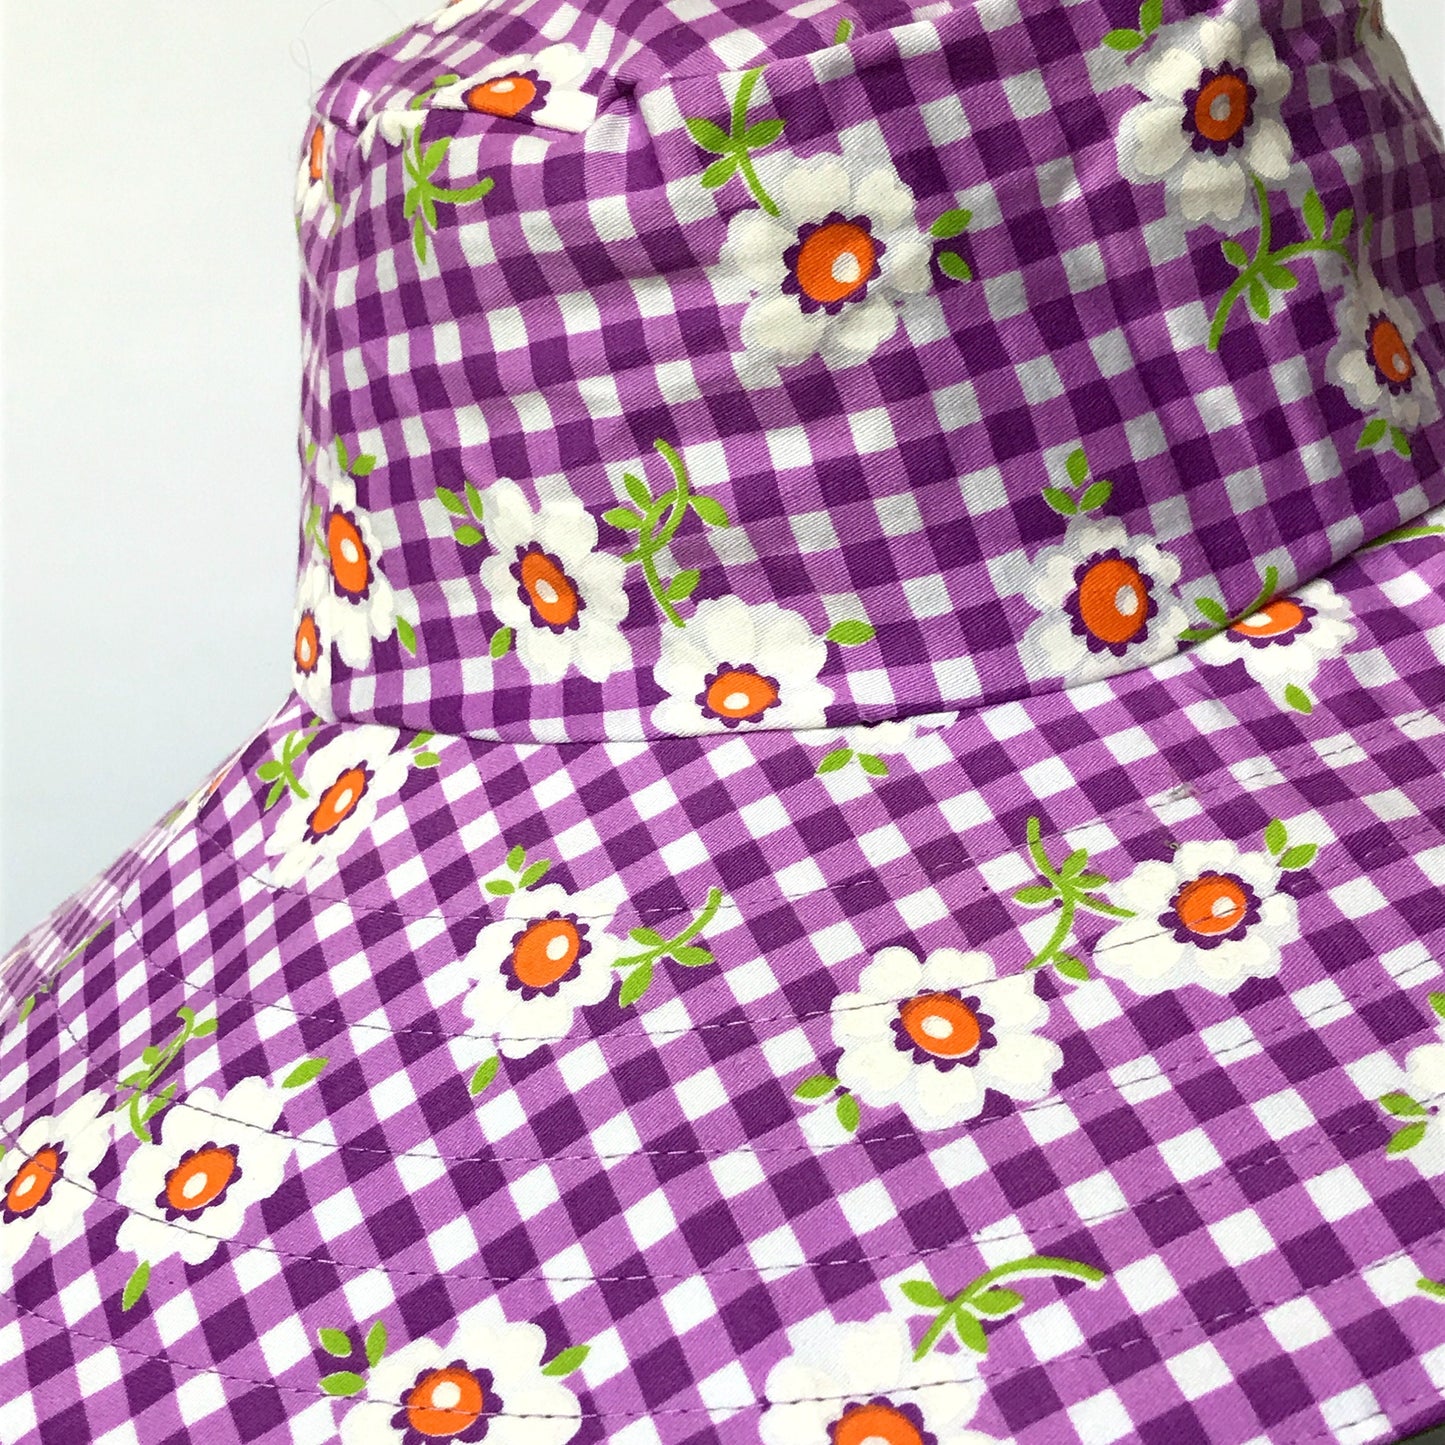 Wide Brim Reversible Sun Hat, Ladies / Girls sizes avail - vintage purple floral